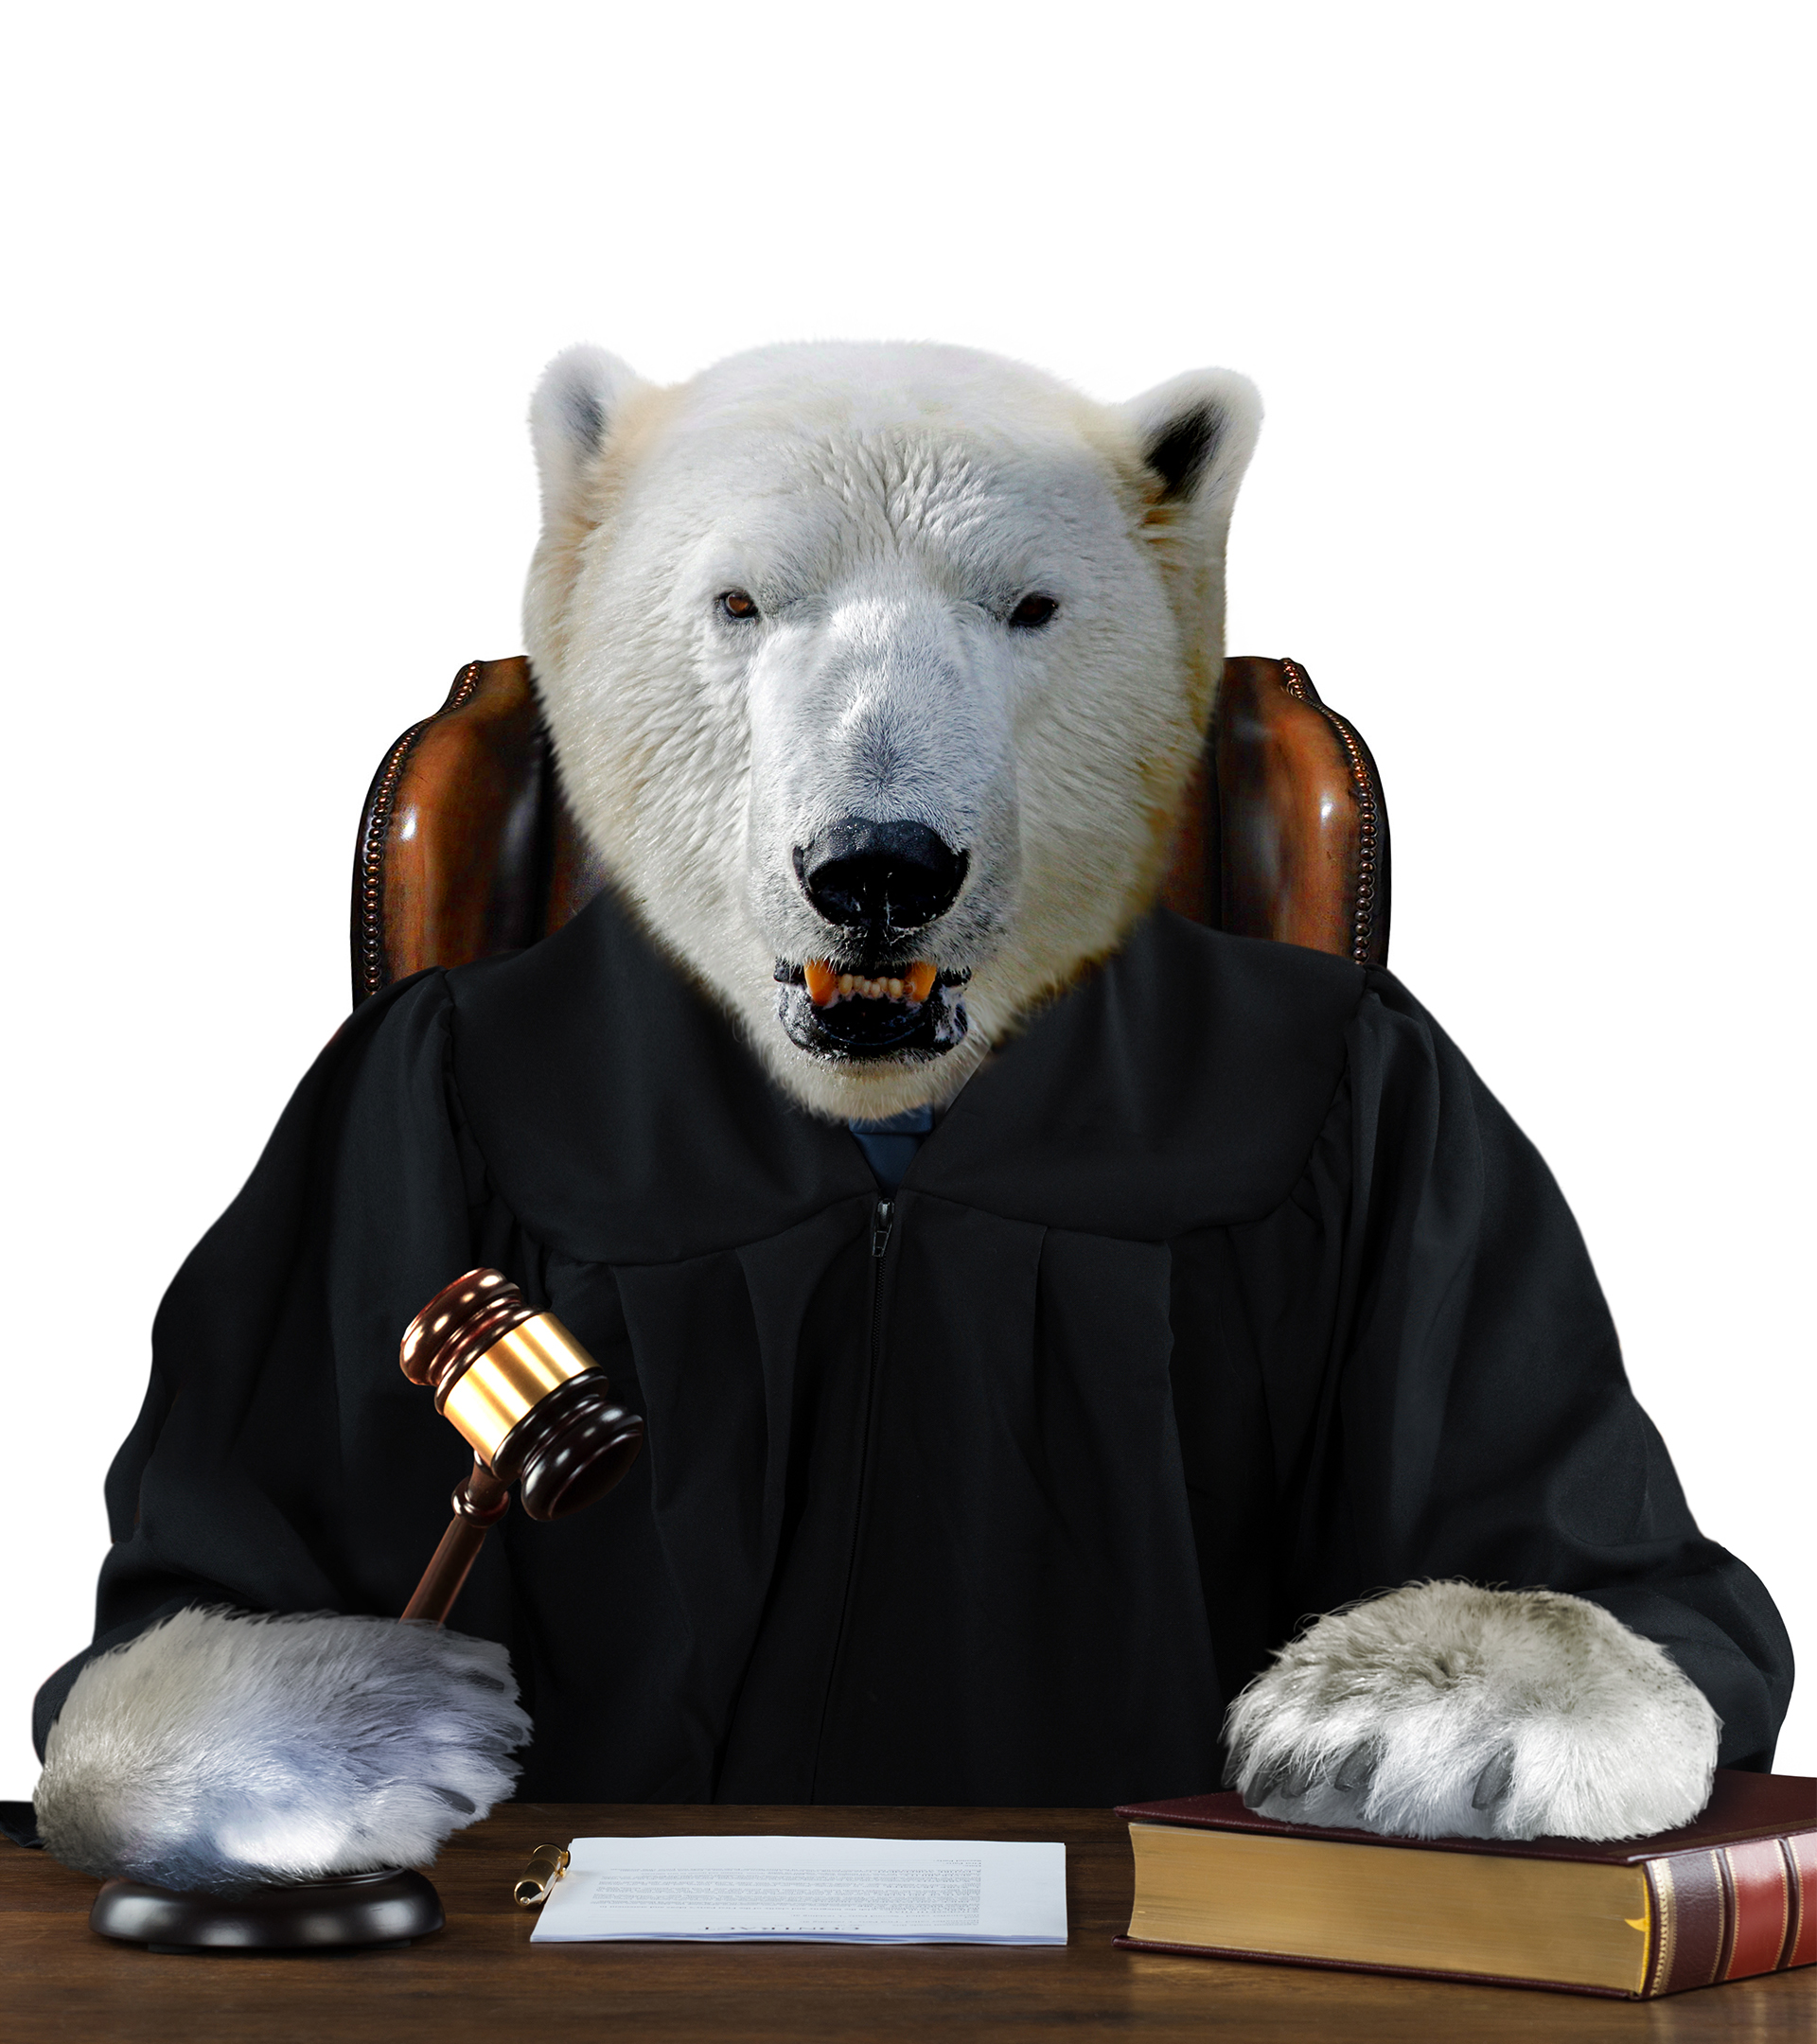 La guerra contra el cambio climtico llega a los tribunales: "No se necesita ser jurista para ver que es injusto"